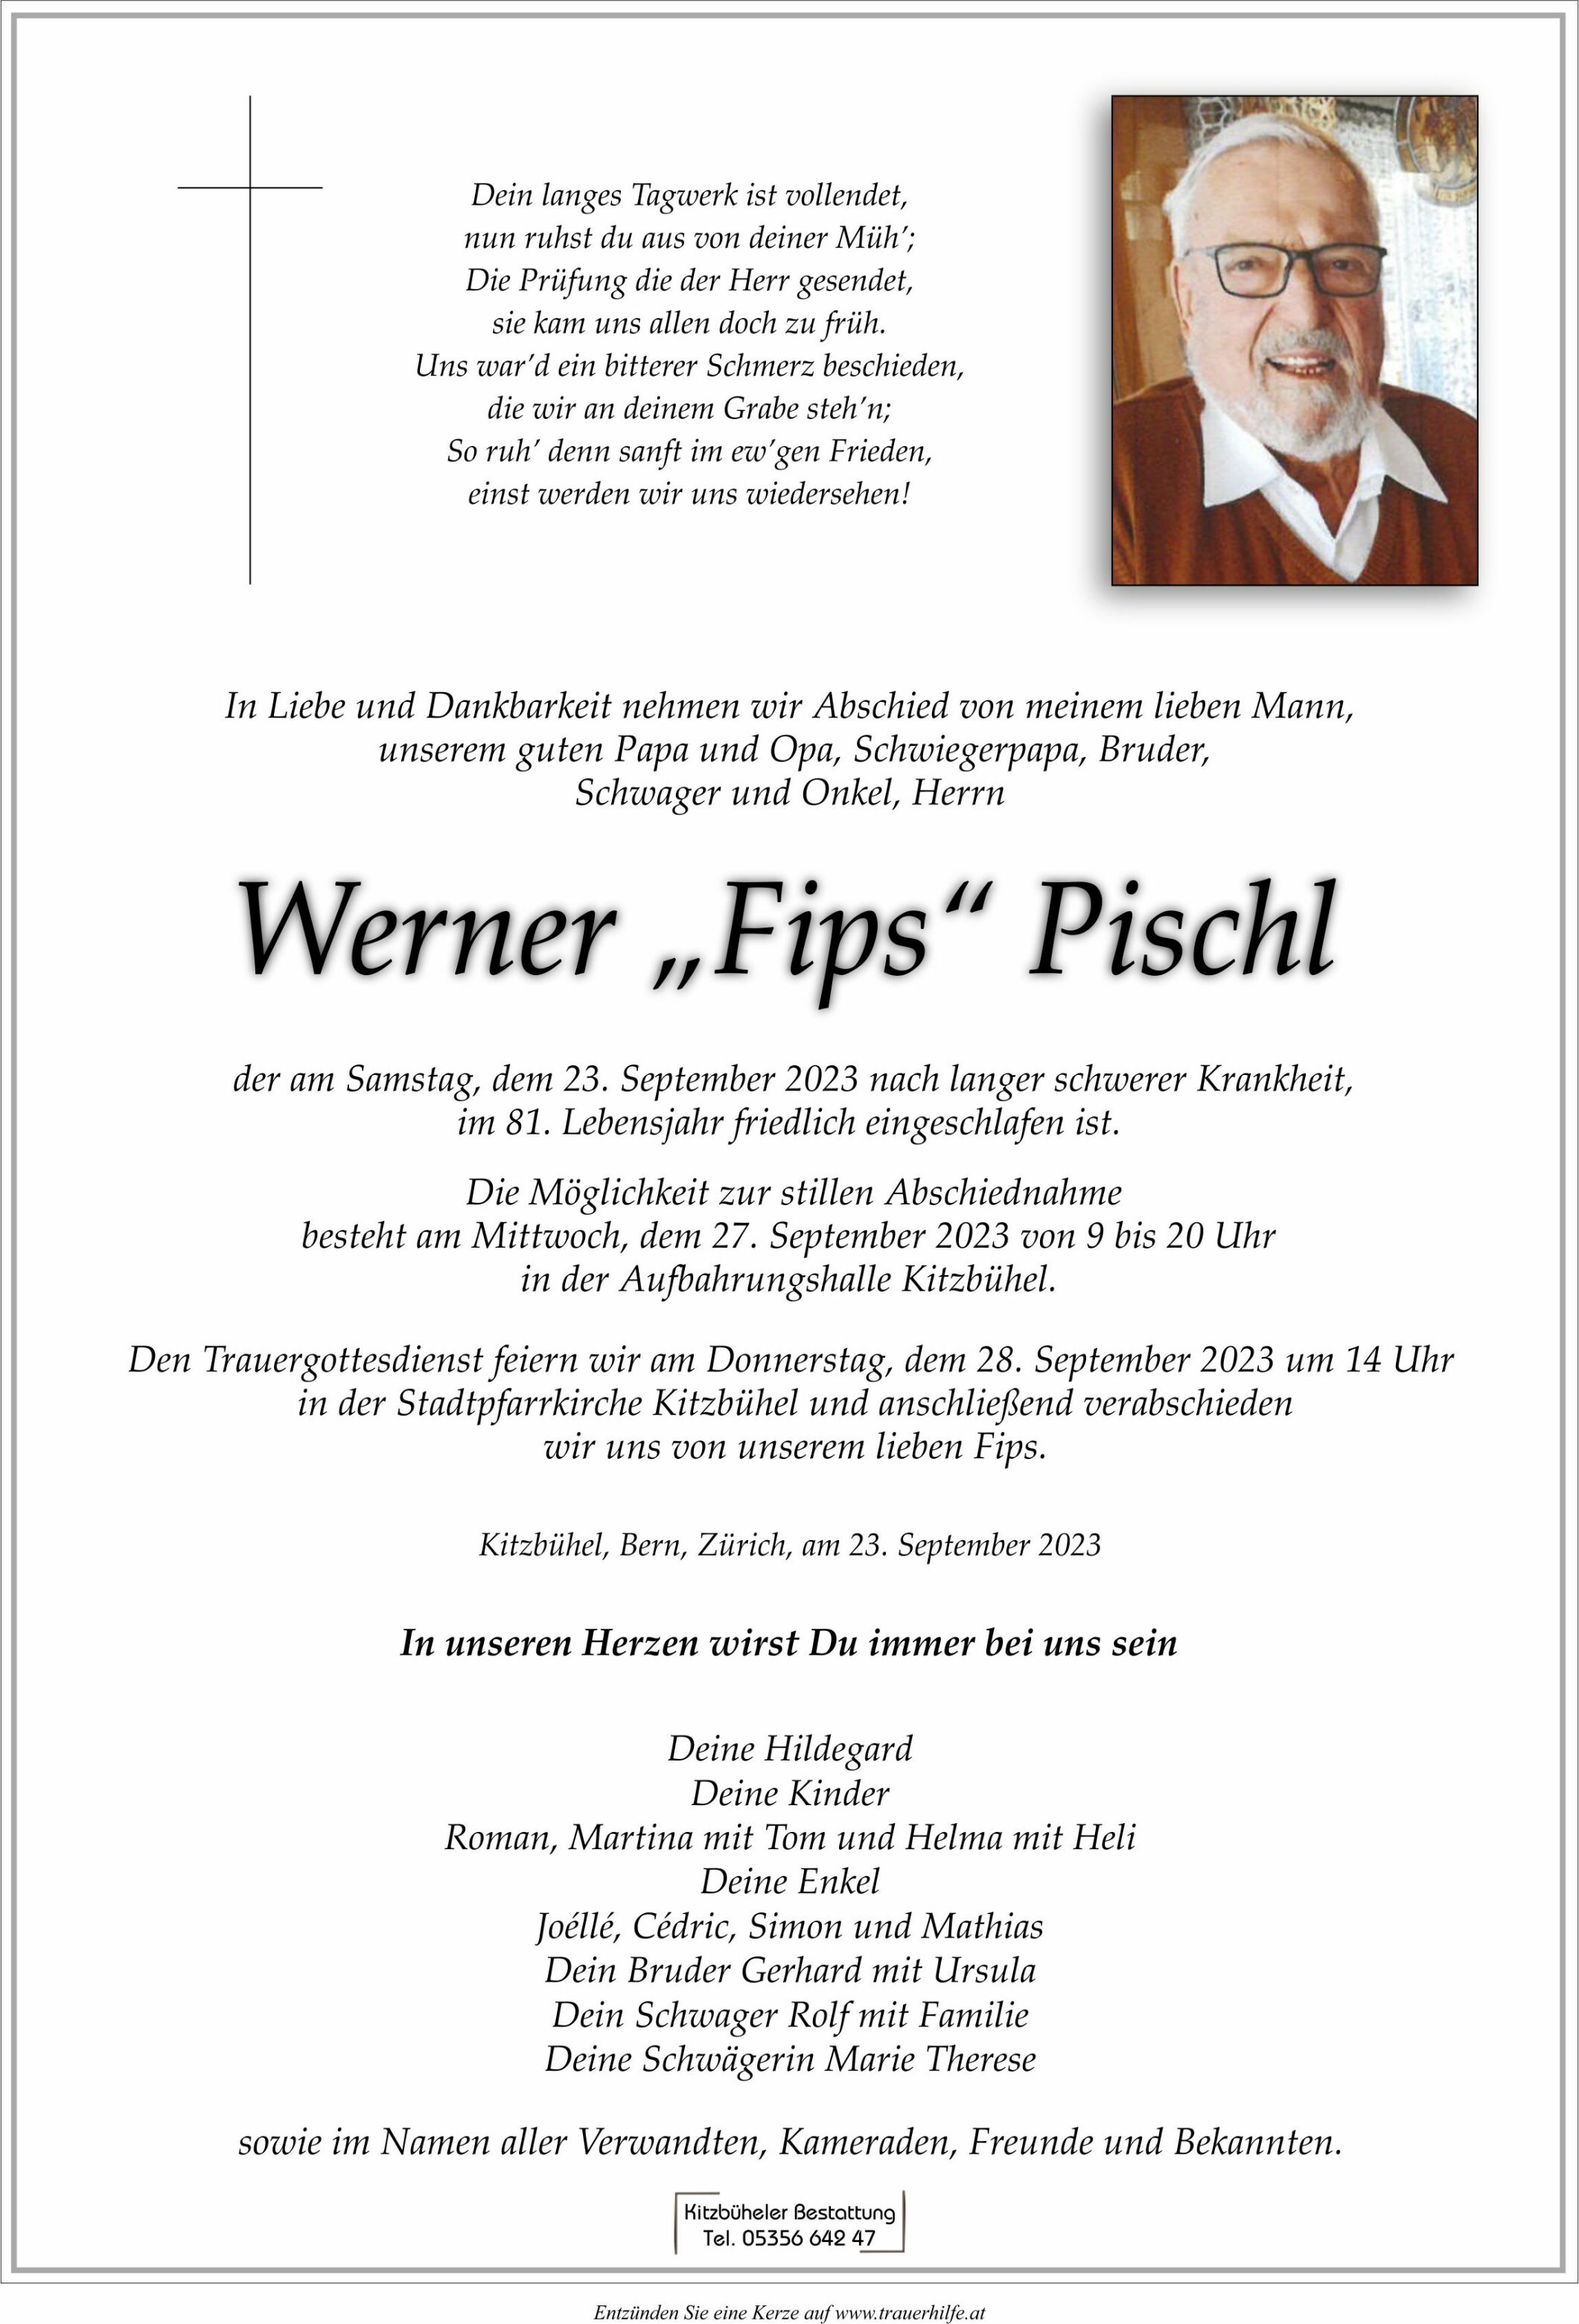 Werner "Fips" Pischl